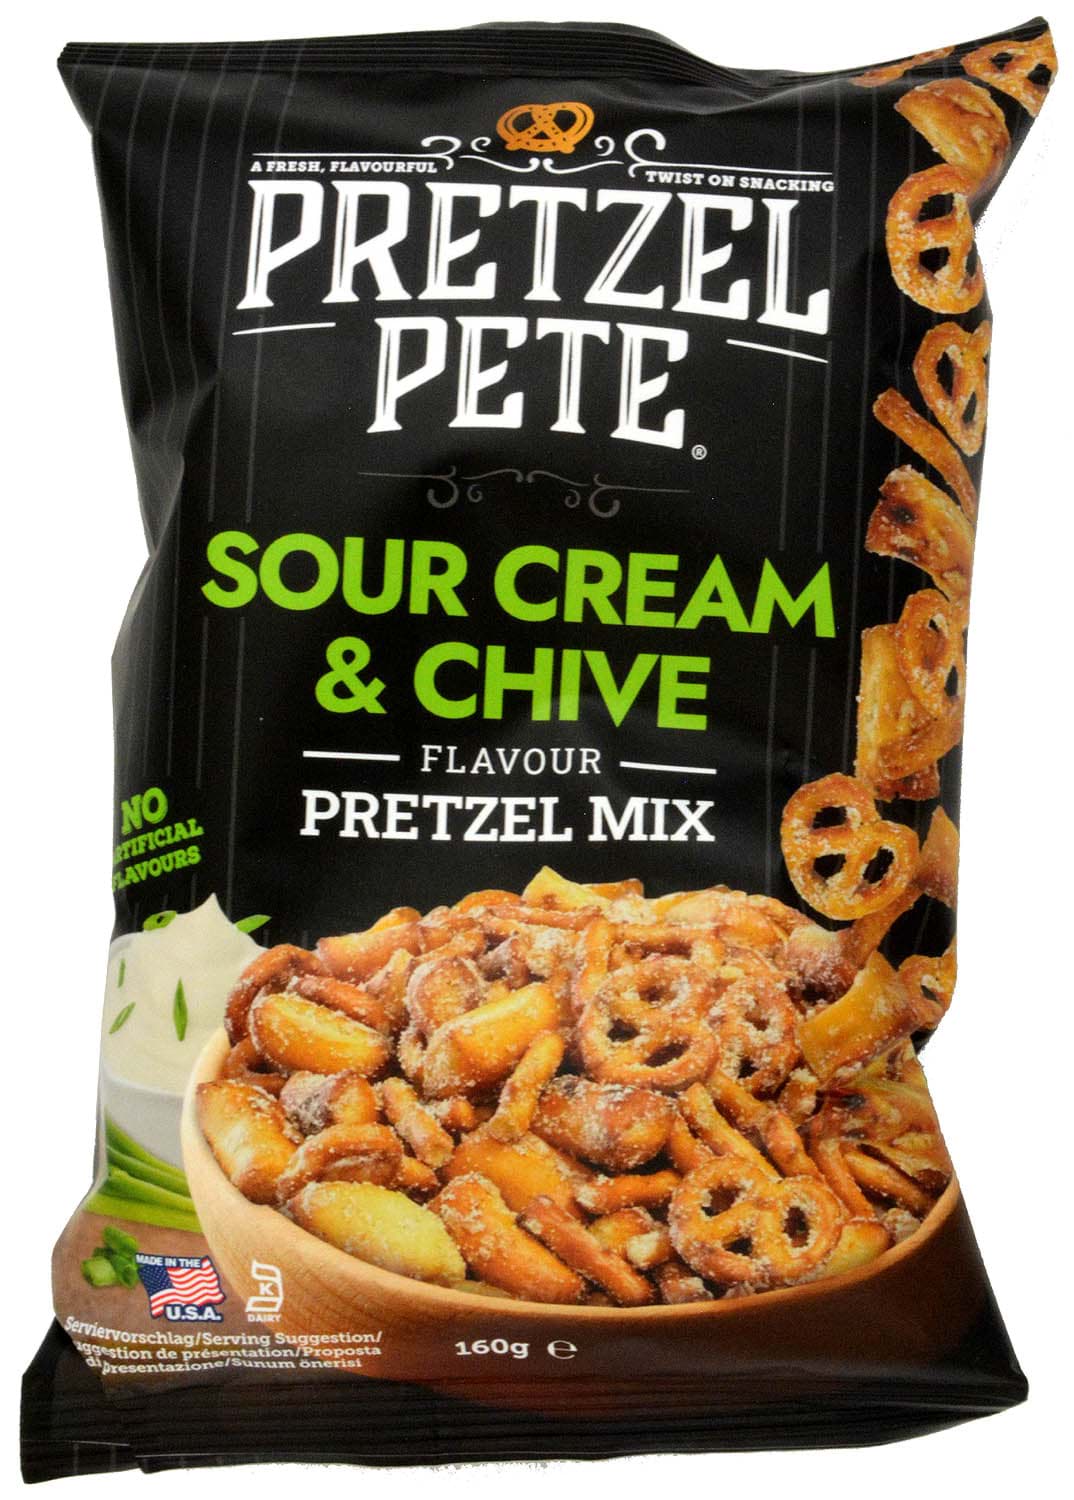 Picture of Pretzel Pete Sour Cream & Chive Pretzel Mix 160g